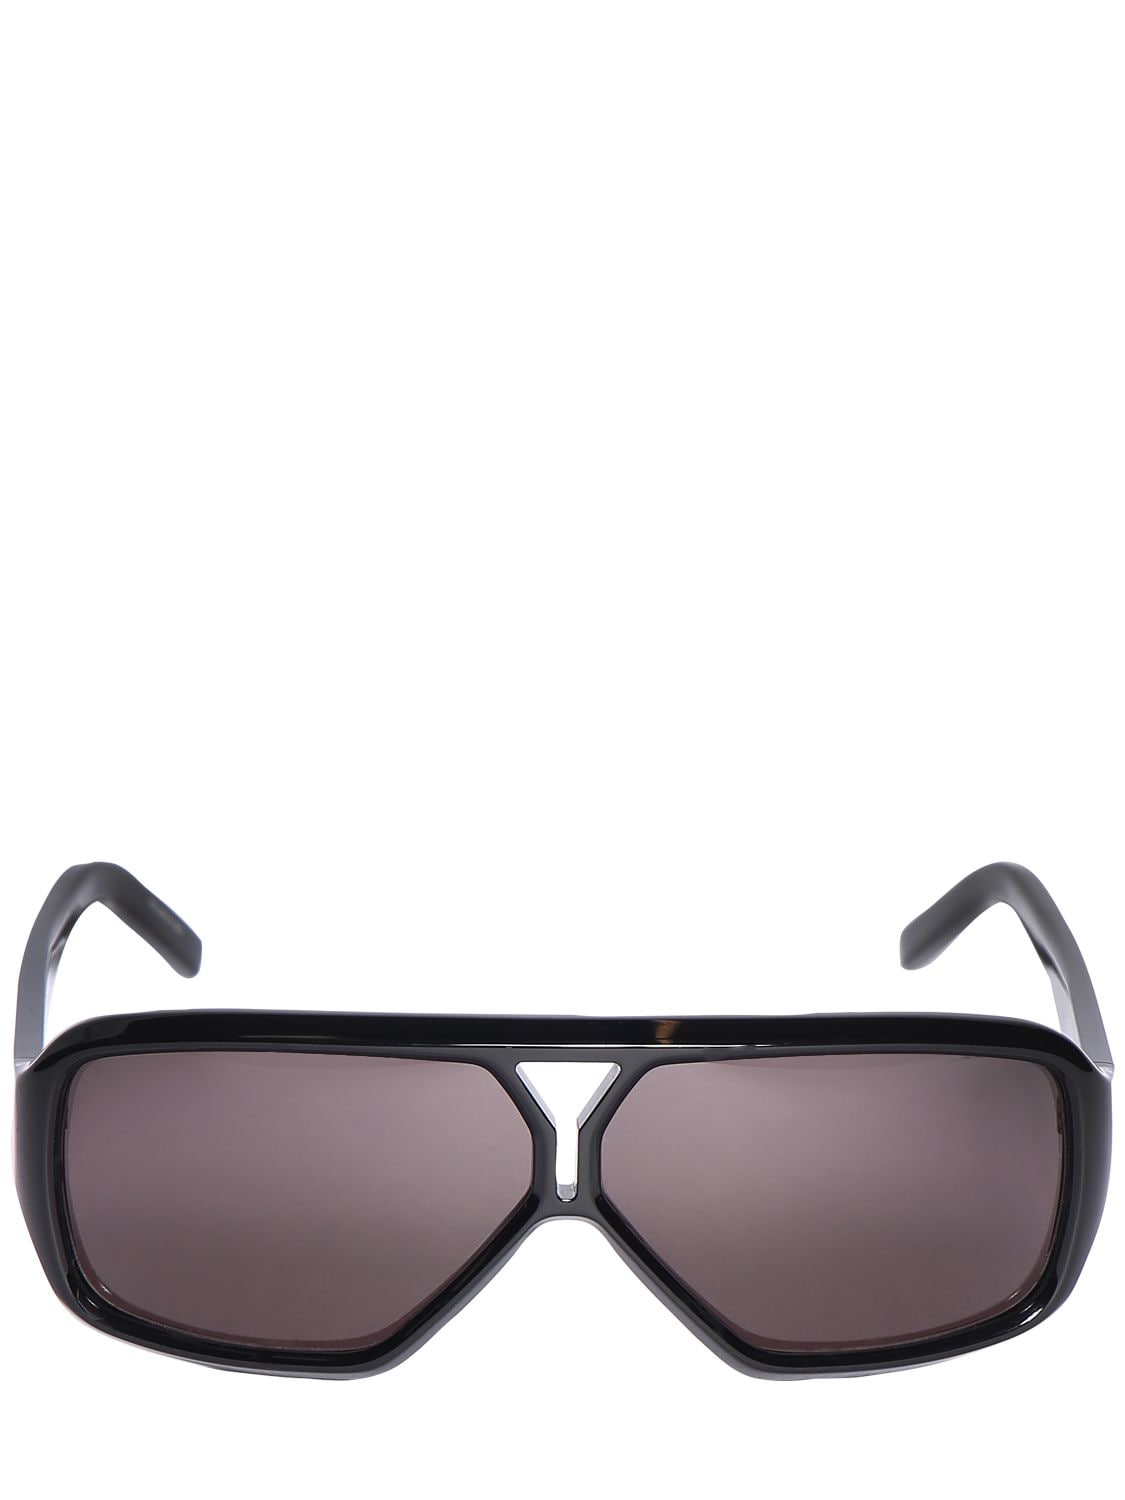 Saint Laurent Women's SL 569 Y Sunglasses